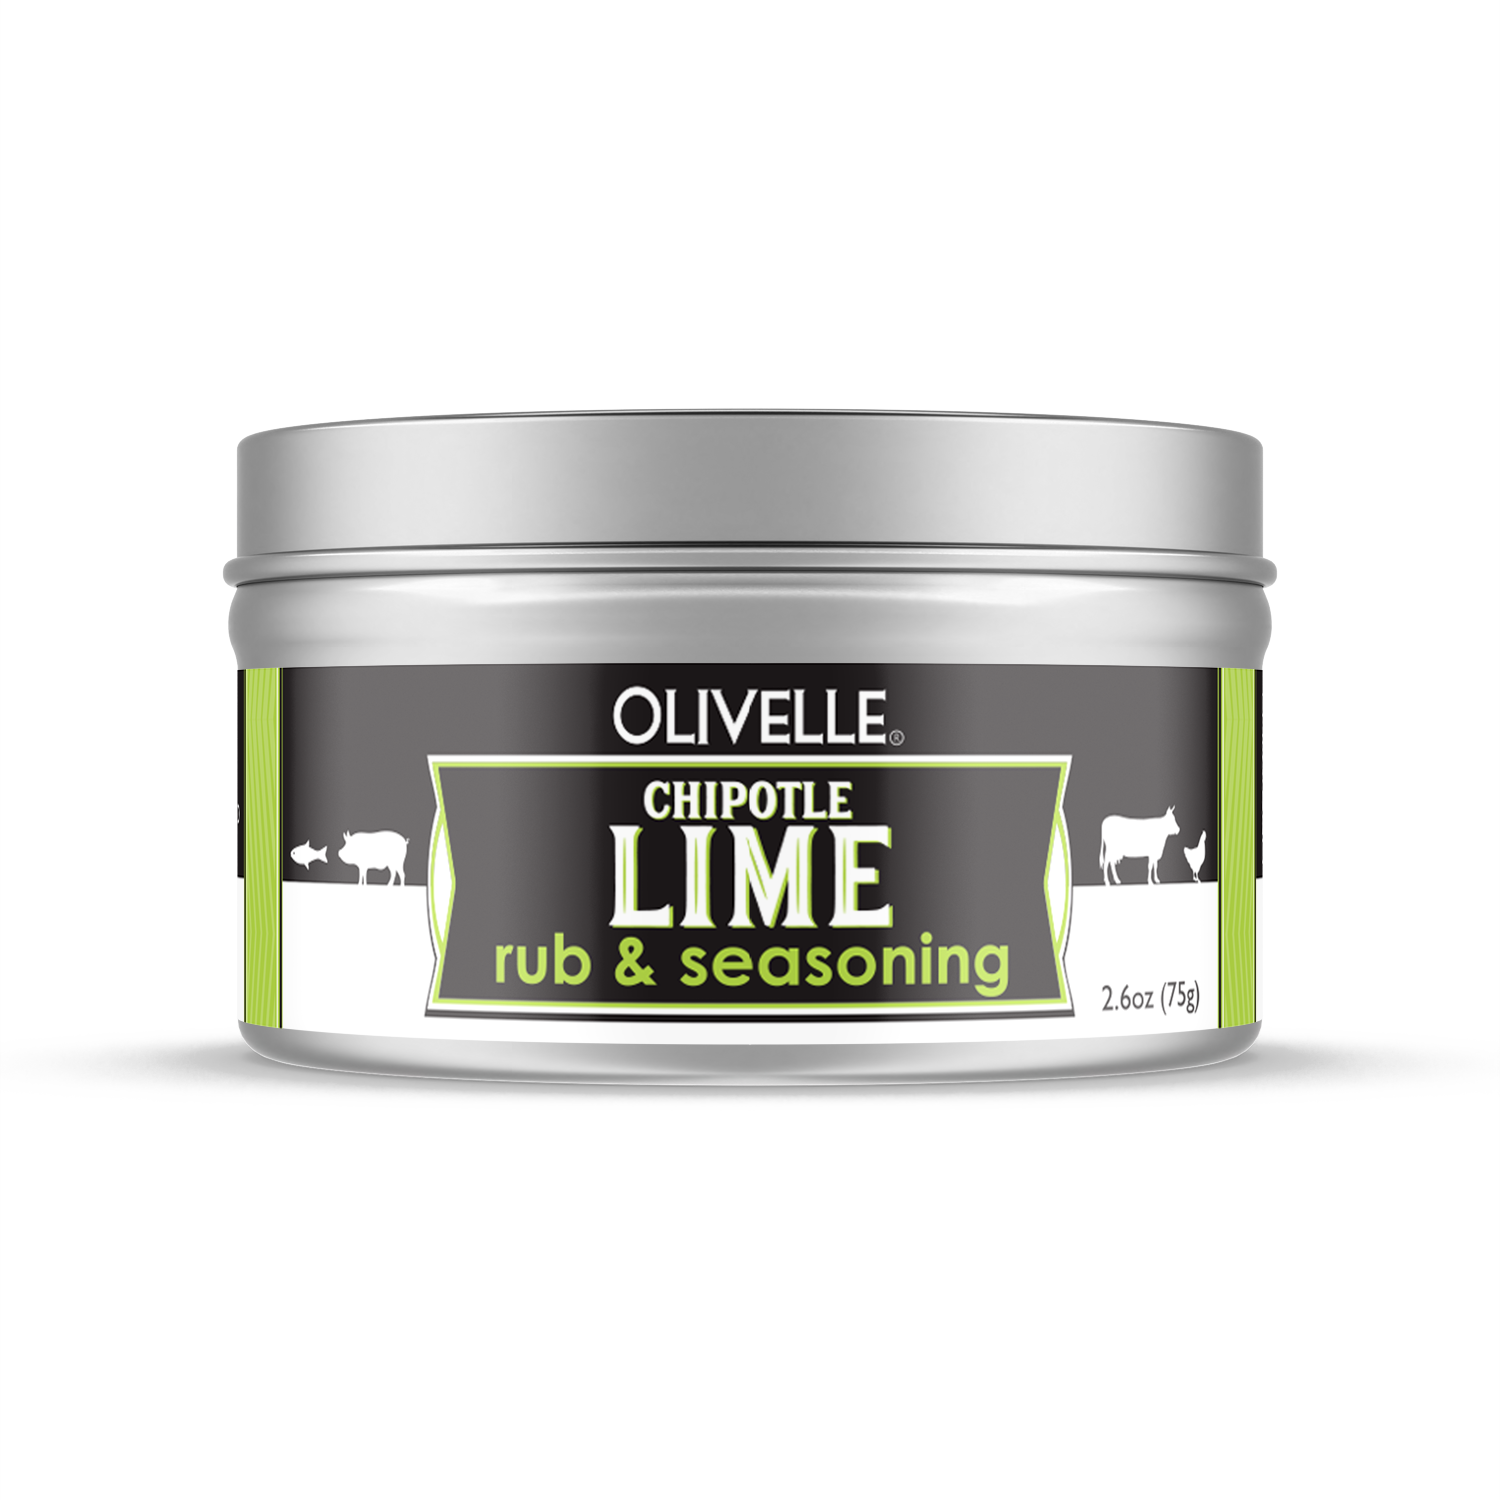 Chipotle Lime Rub & Seasoning